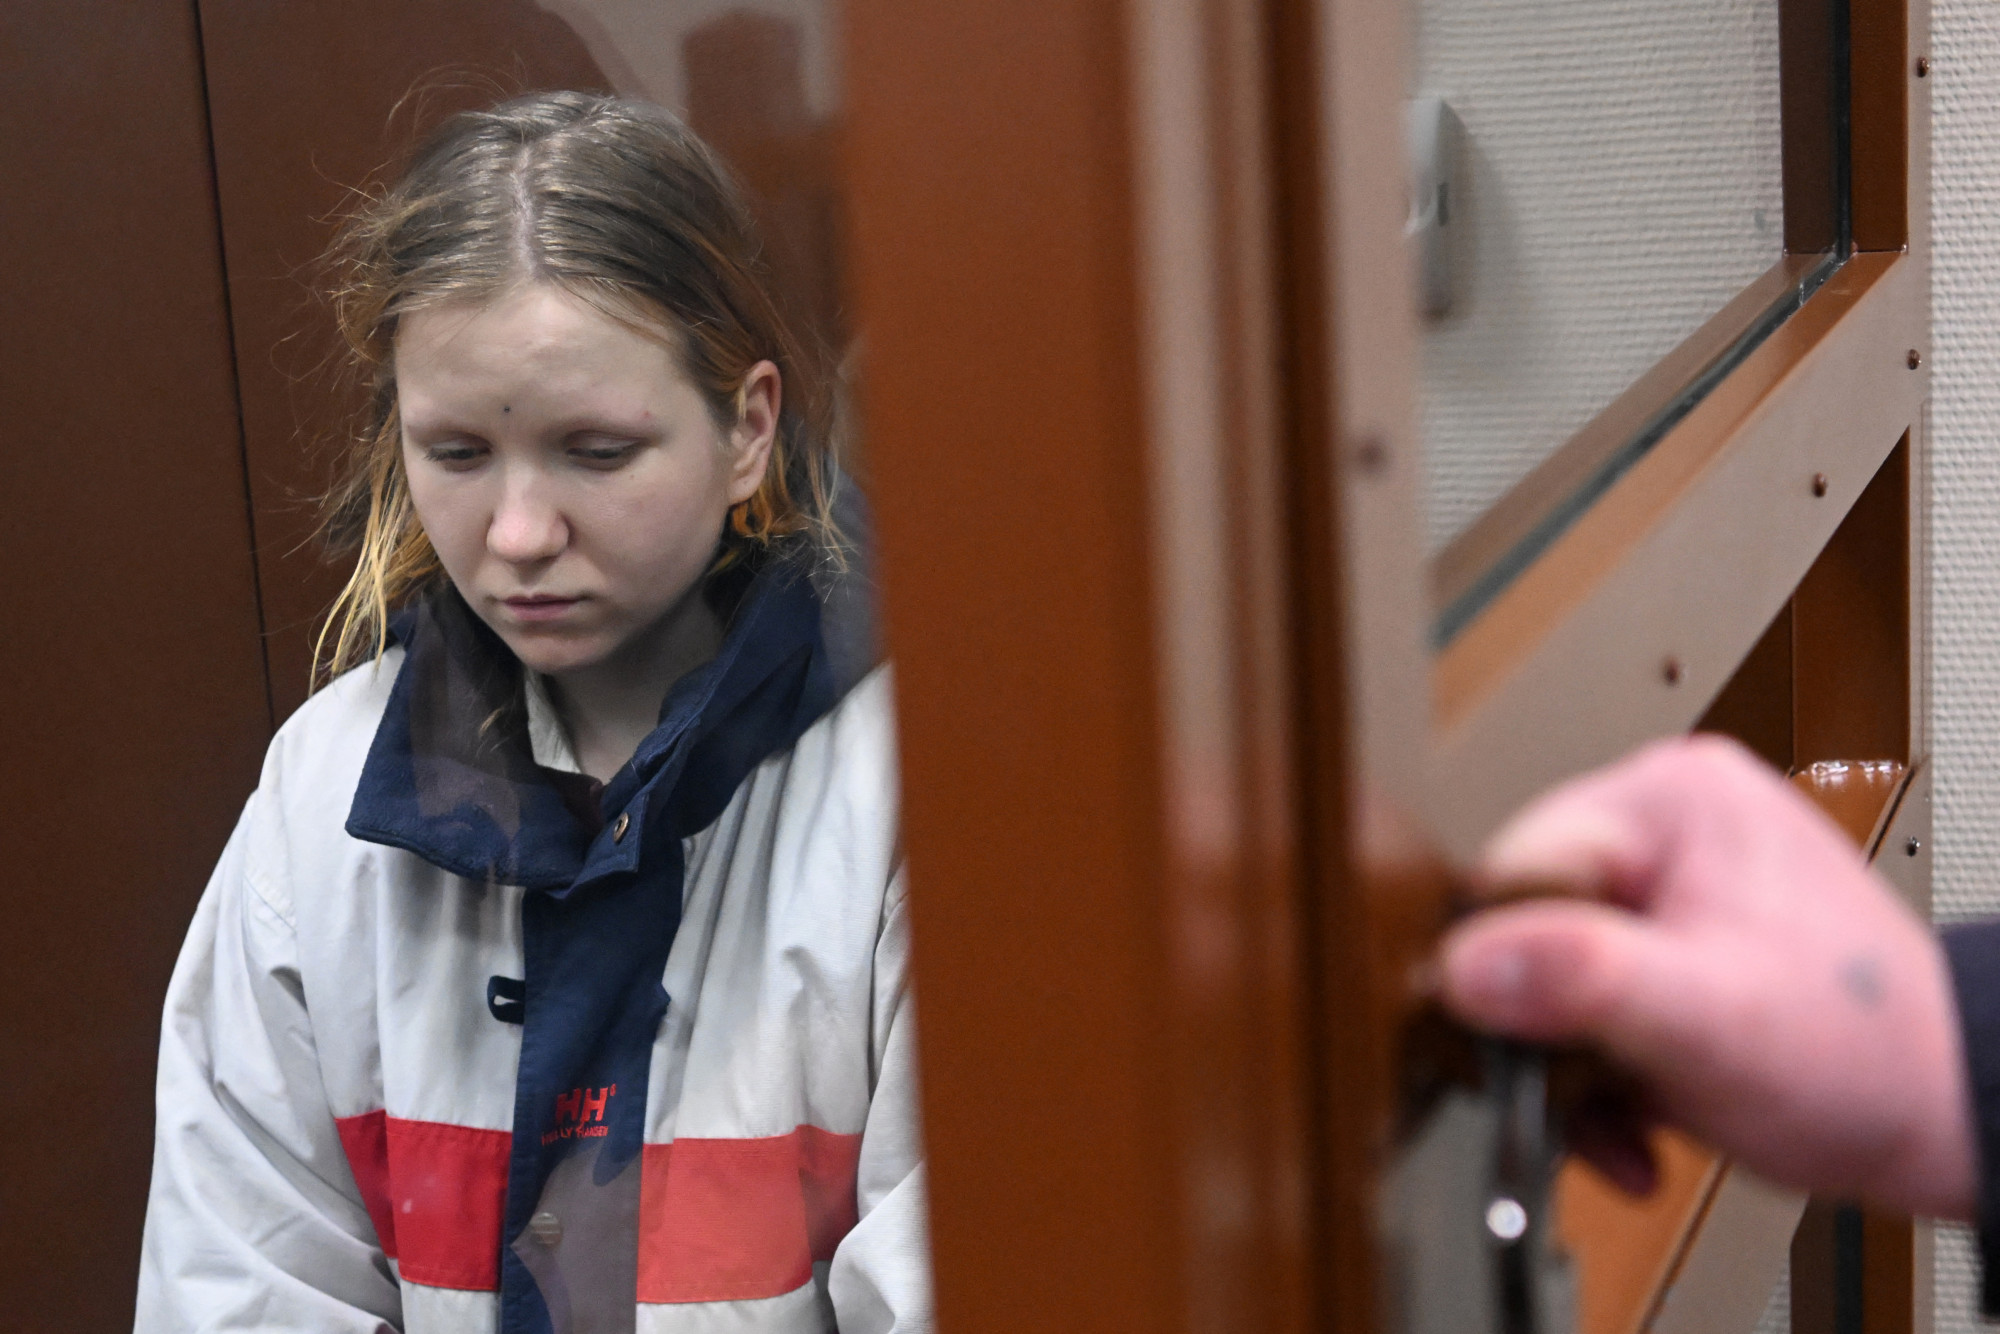 Elkezdődött a Vladlen Tatarszkij orosz katonai bloggert felrobbantó nő pere